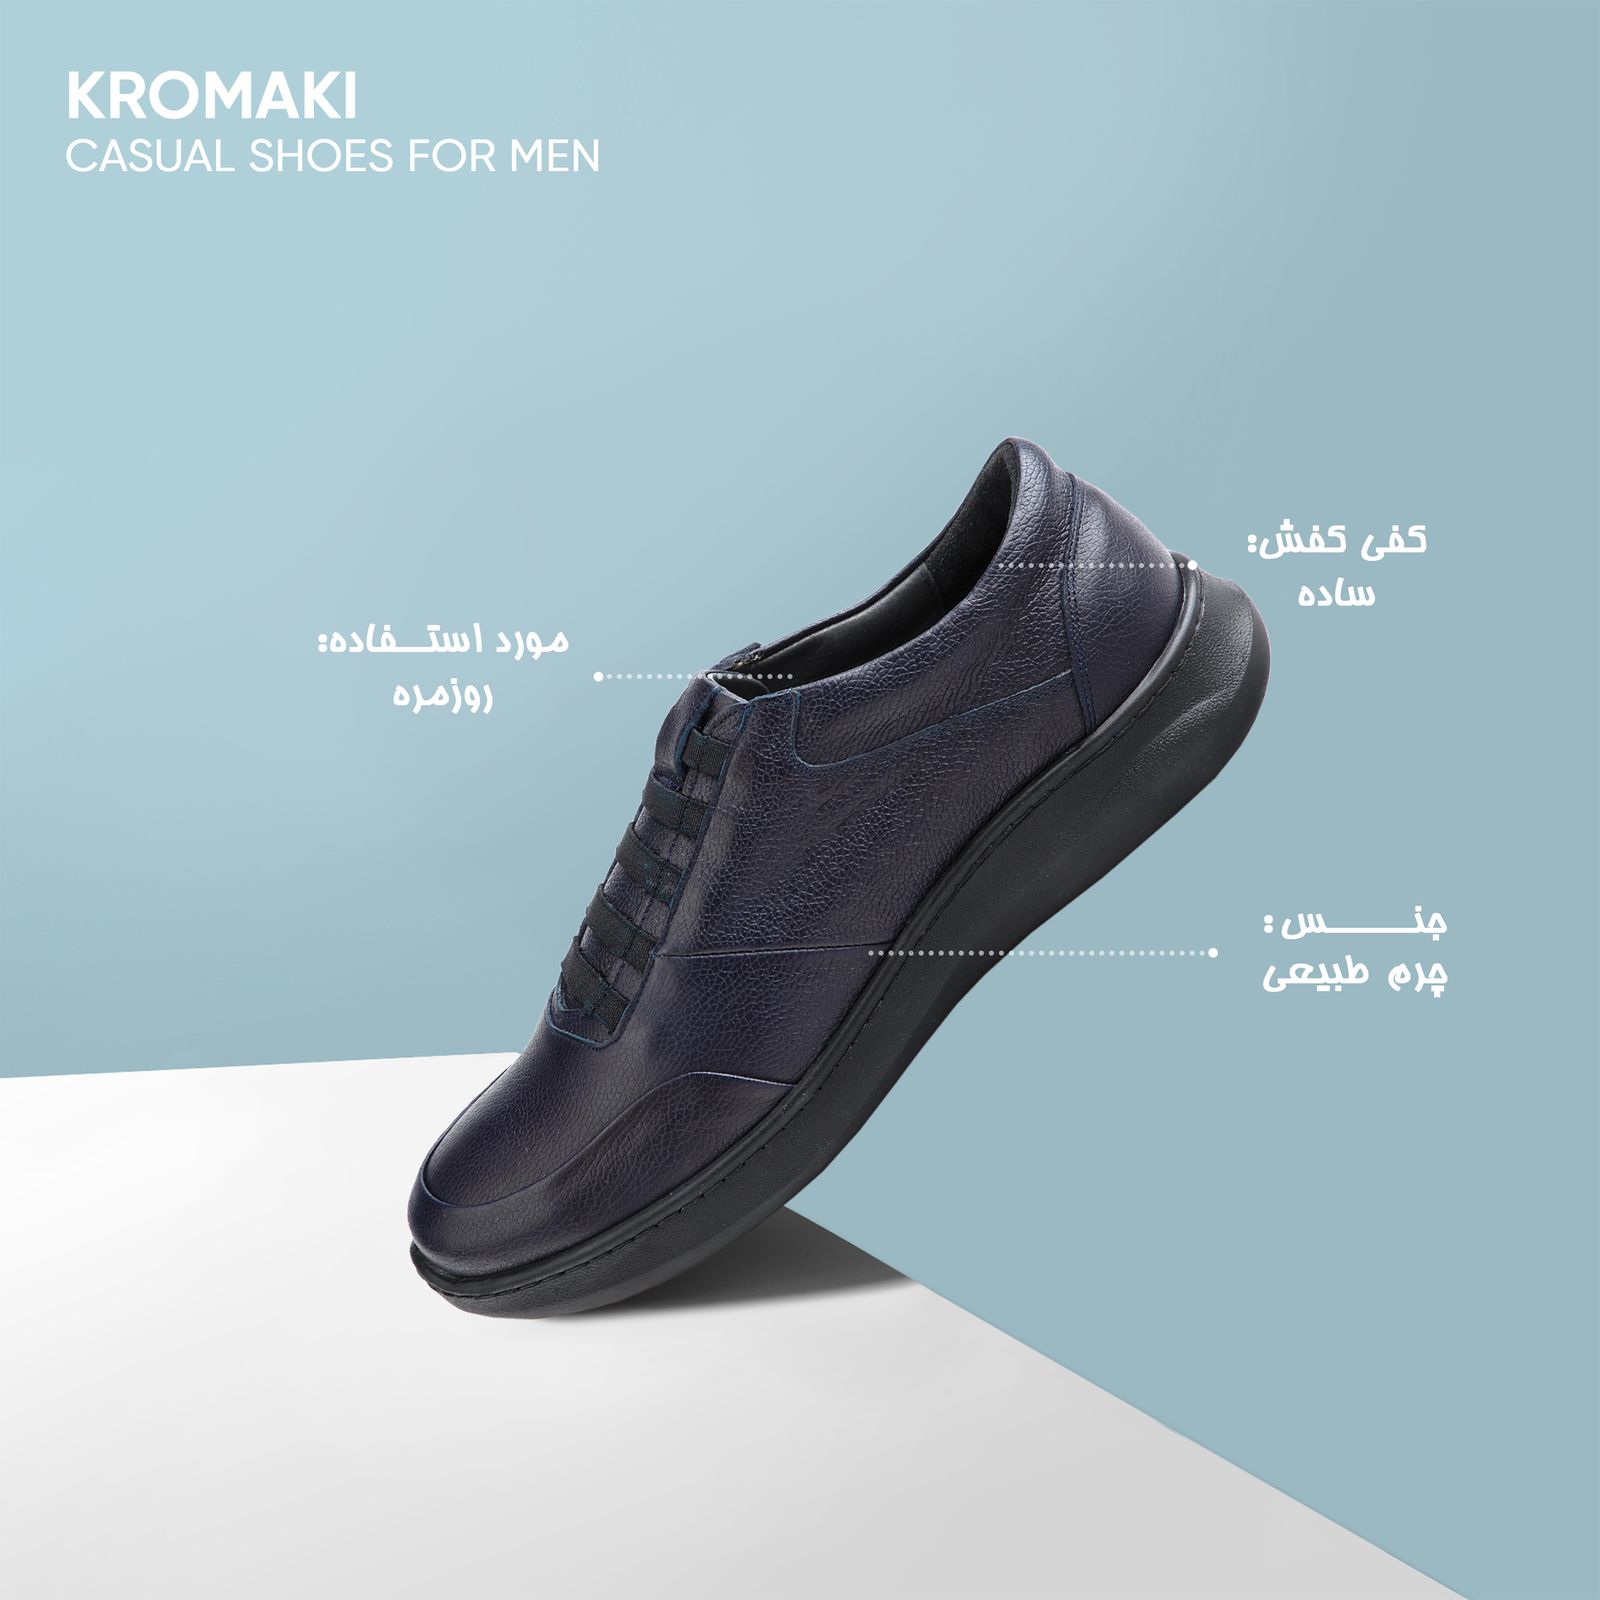 کفش روزمره مردانه کروماکی مدل KM11545 -  - 7